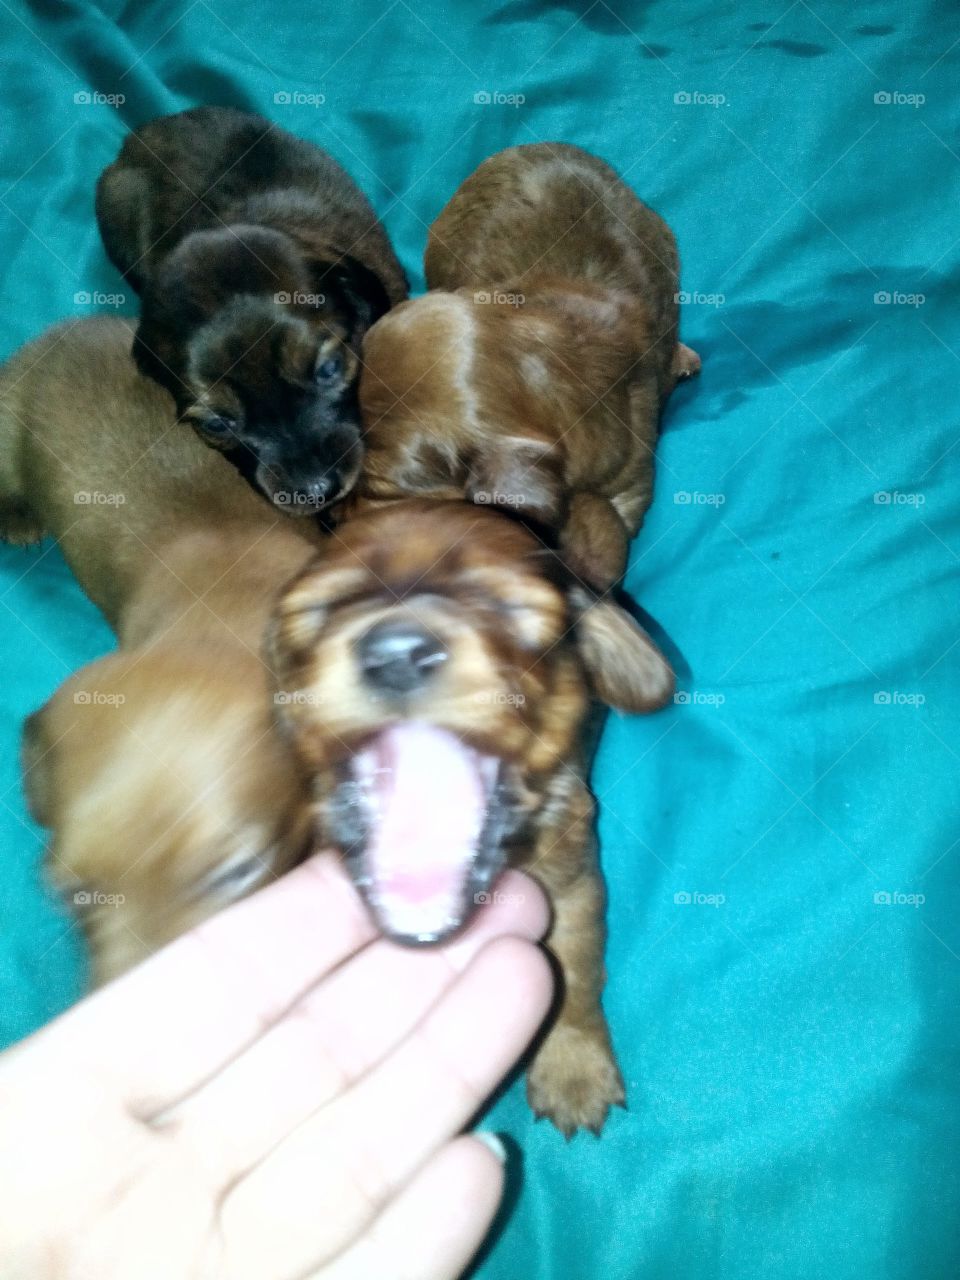 dashound puppies